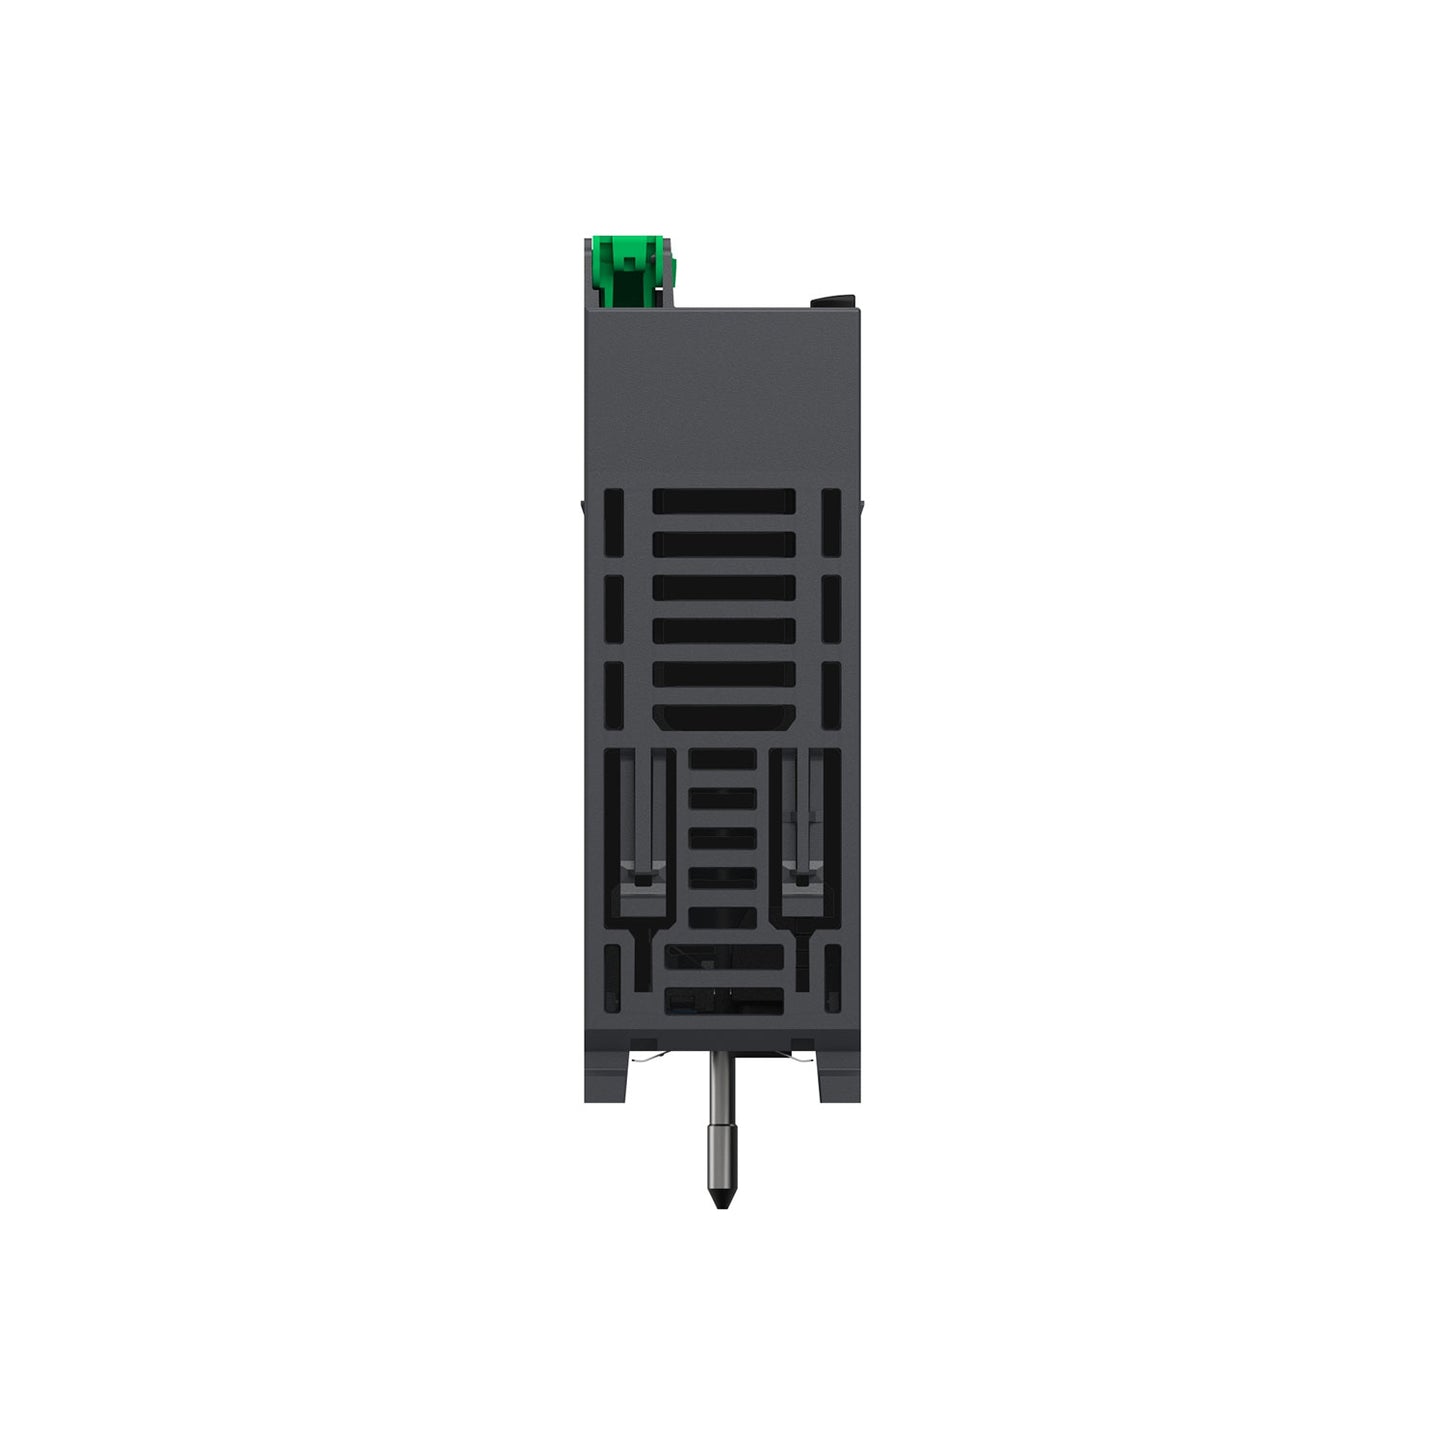 Schneider BMXP342020 processor module M340 - max 1024 discrete + 256 analog I/O - Modbus - Ethernet